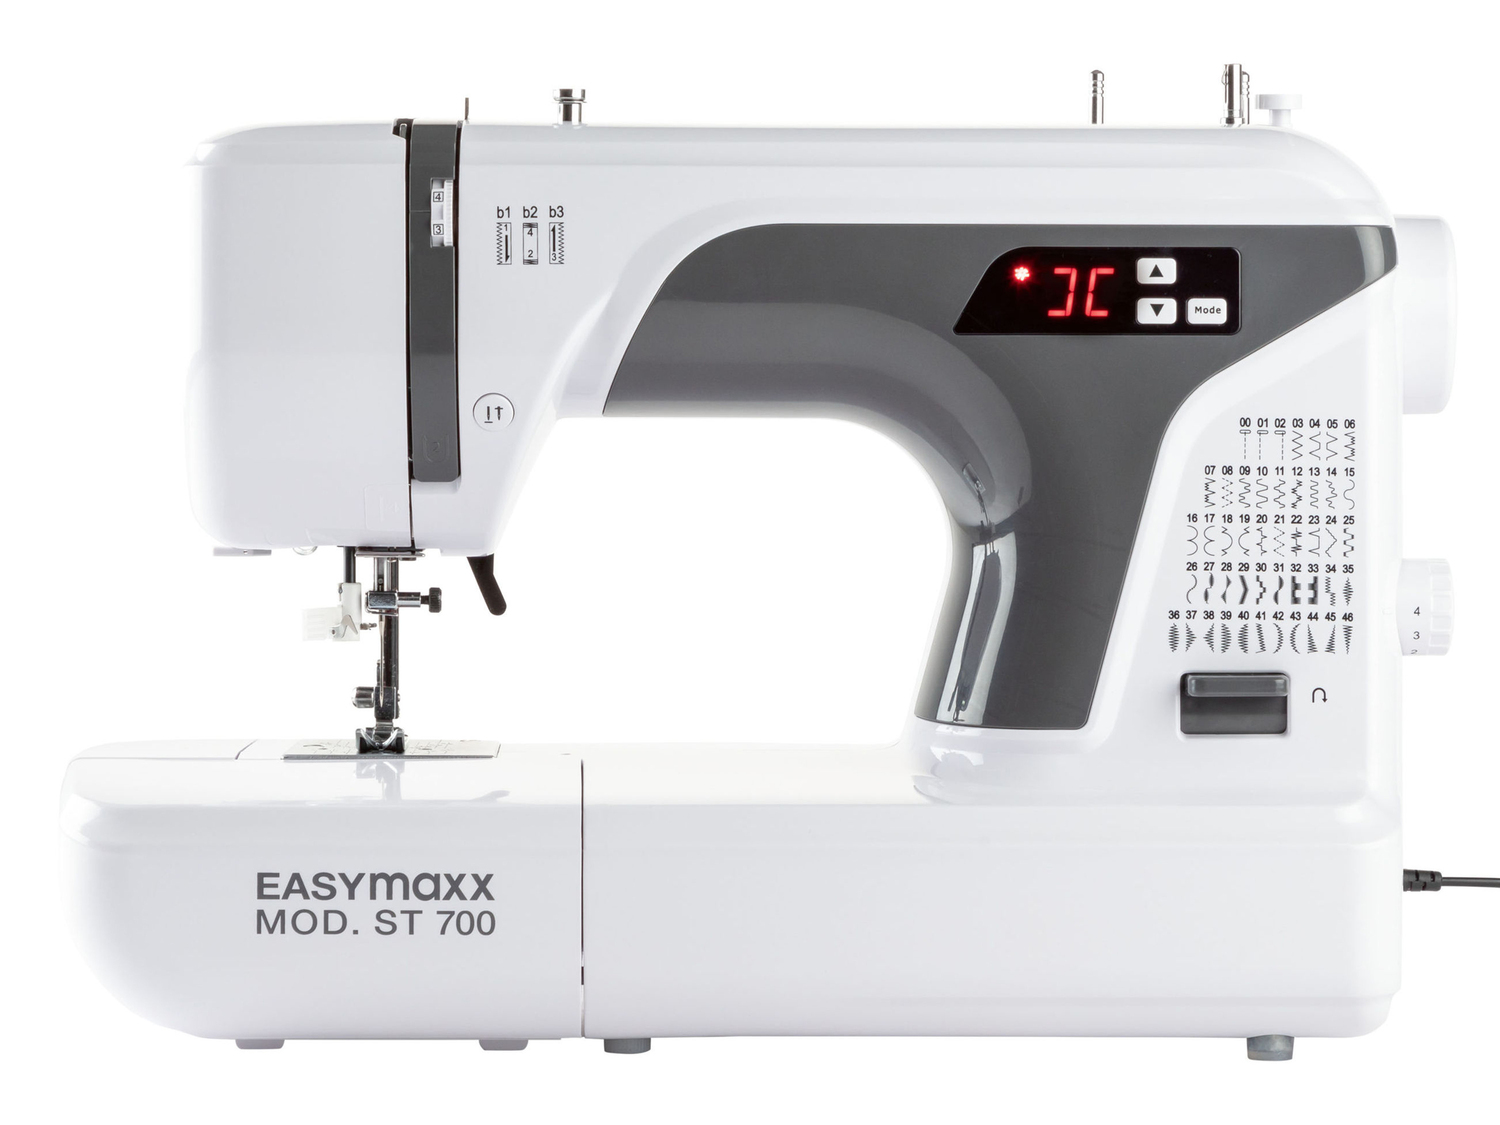 Macchina da cucire digitale Easymaxx MOd. st 700, prezzo 199.00 € 
- Con 50 punti ...